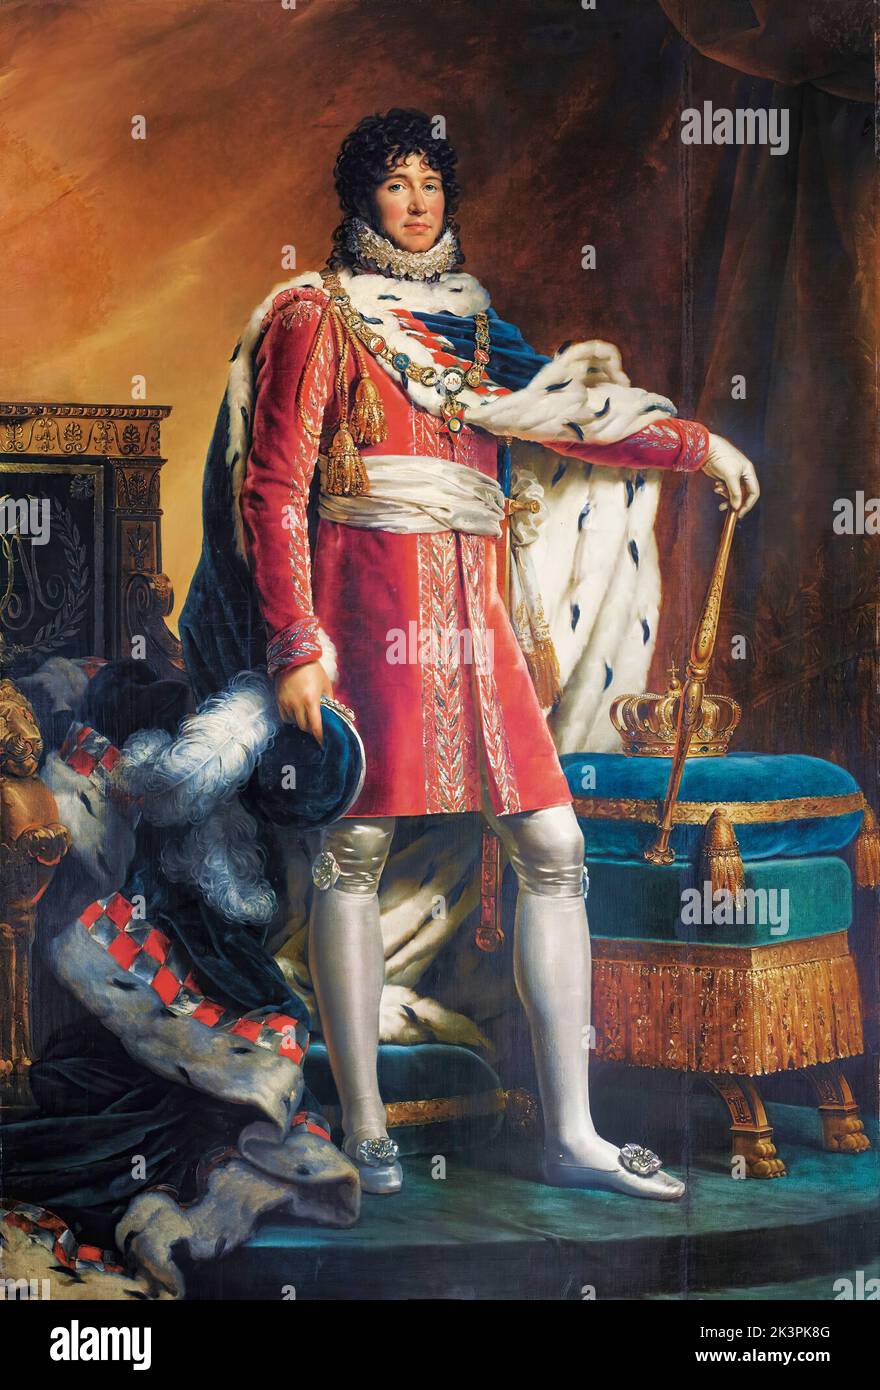 Joachim Napoléon Murat (1767-1815), roi de Naples et des deux Siciles (1808-1815), portrait peint à l'huile sur toile par François Gérard, 1811-1812 Banque D'Images